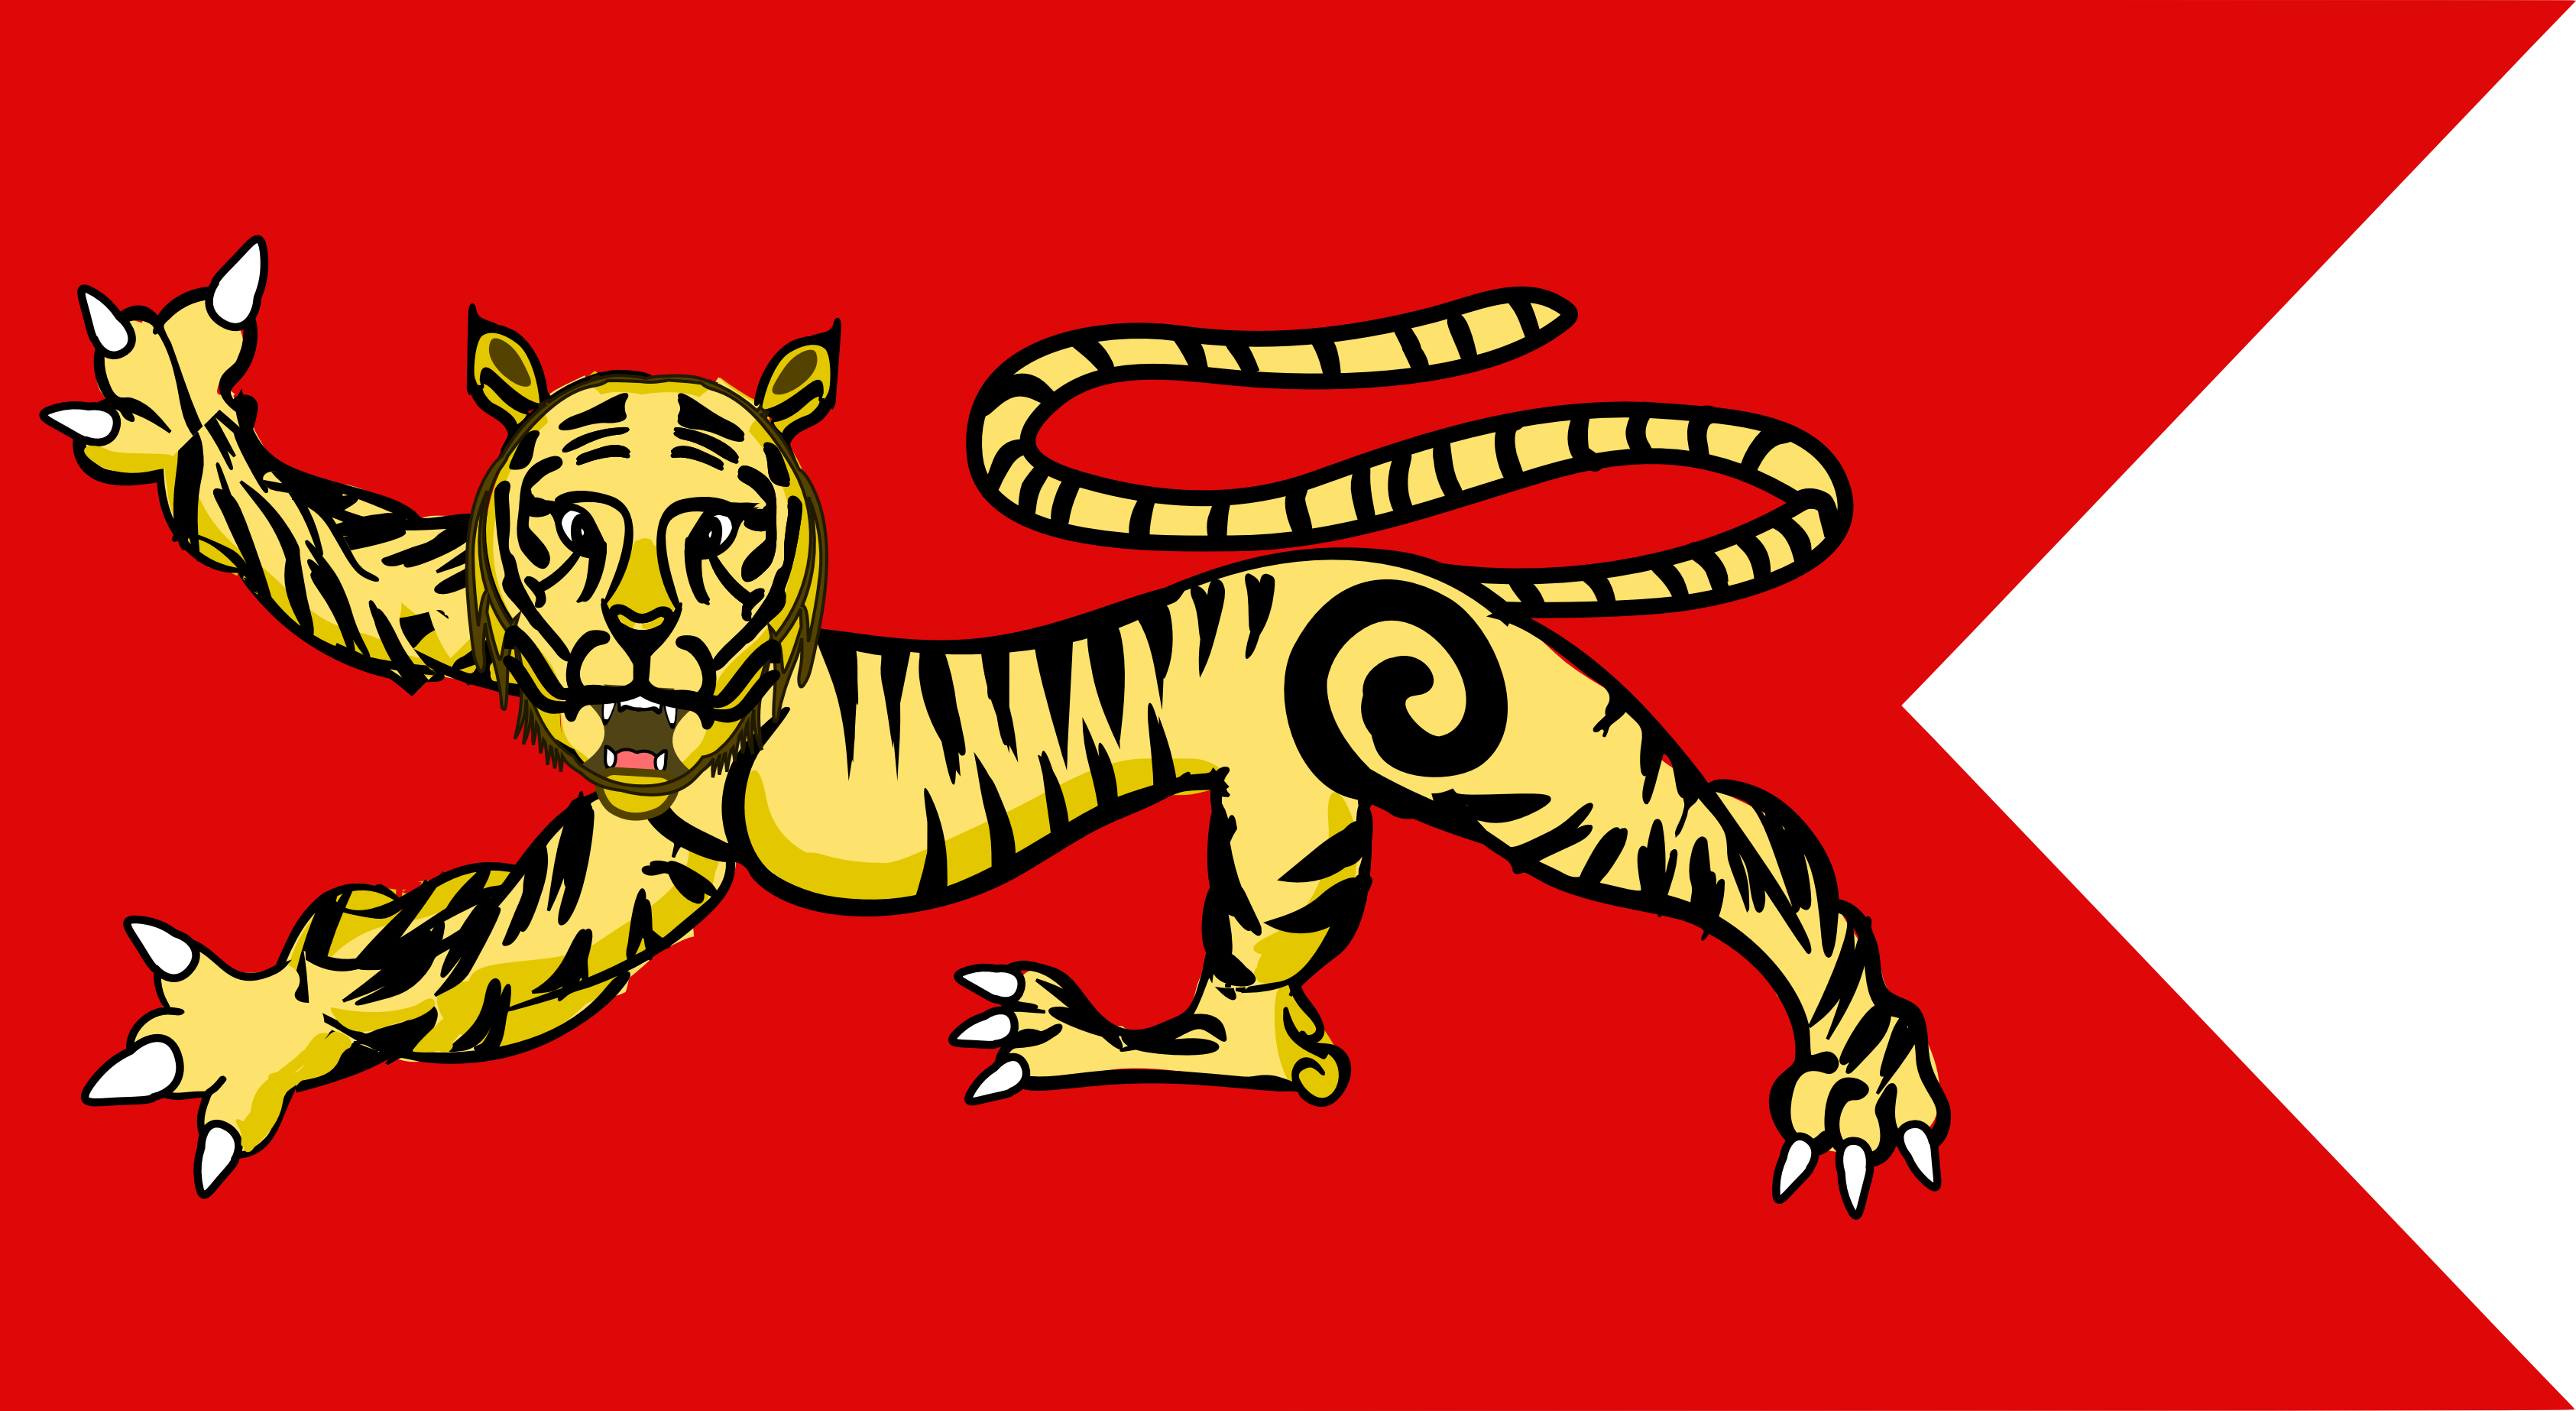 சோழர் - தமிழ் விக்கிப்பீடியா